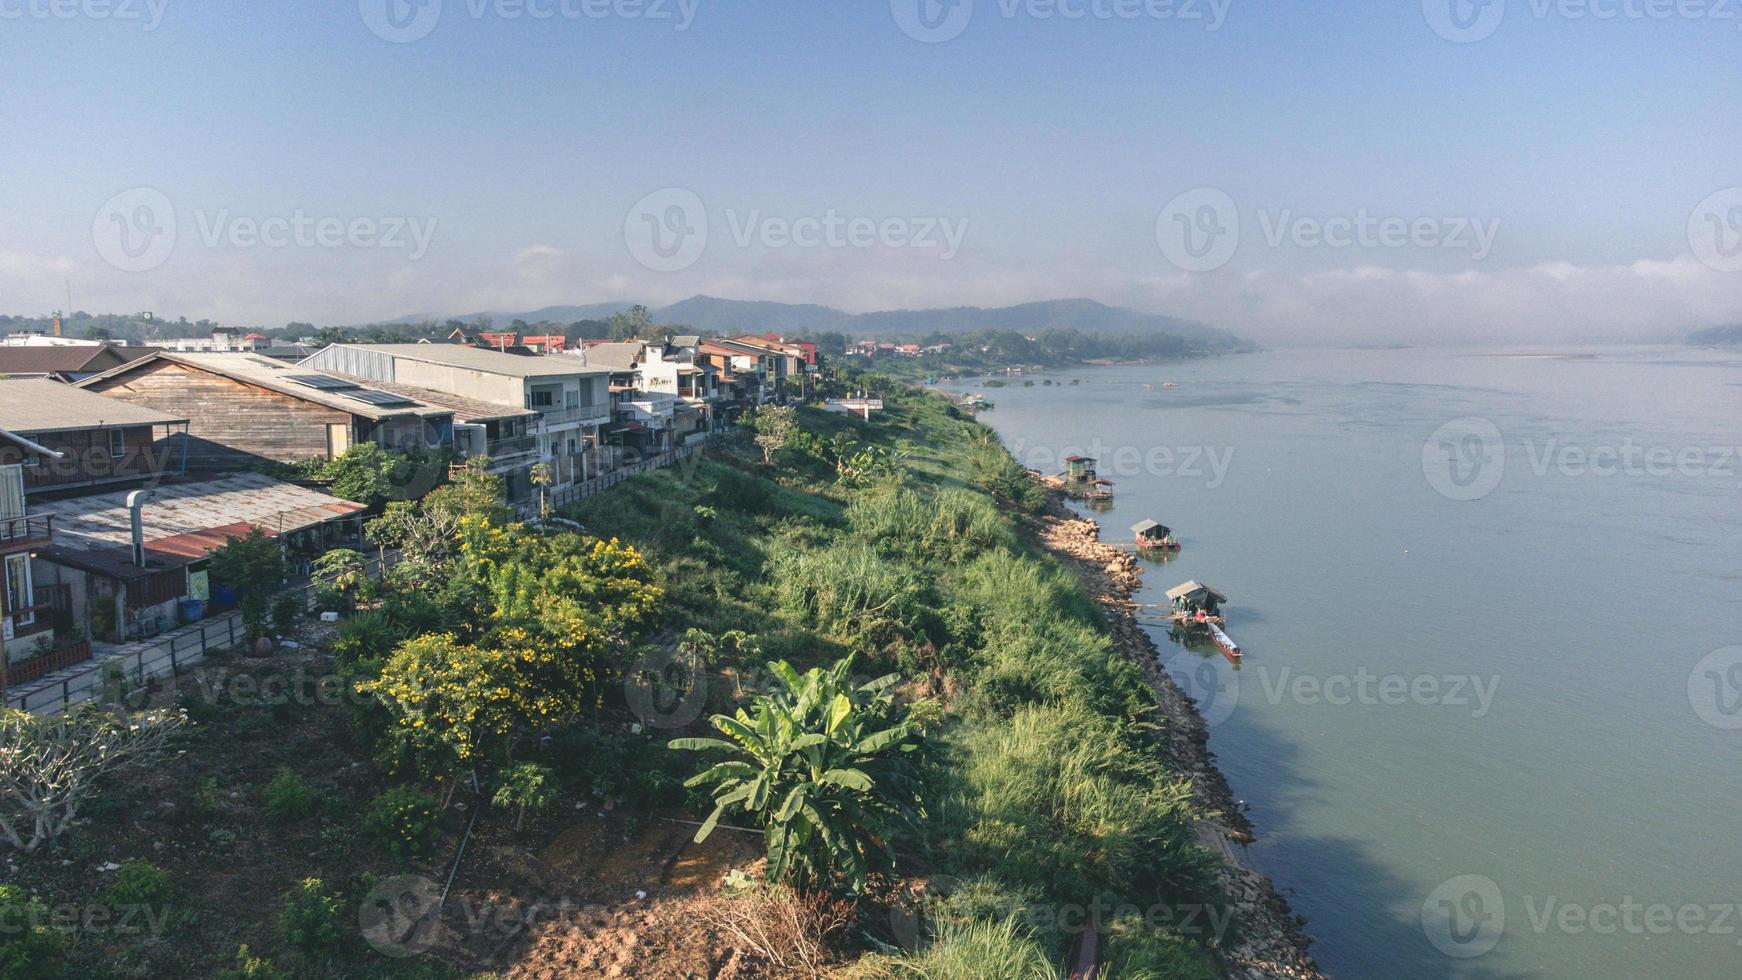 luchtfoto van chiang khan oude dorp tijdens mistige ochtend door drone. dorp langs de Mekong-rivier is de grens tussen Thailand en Laos, die nu een beroemde toeristische attractie is in de provincie Loei, Thailand. foto